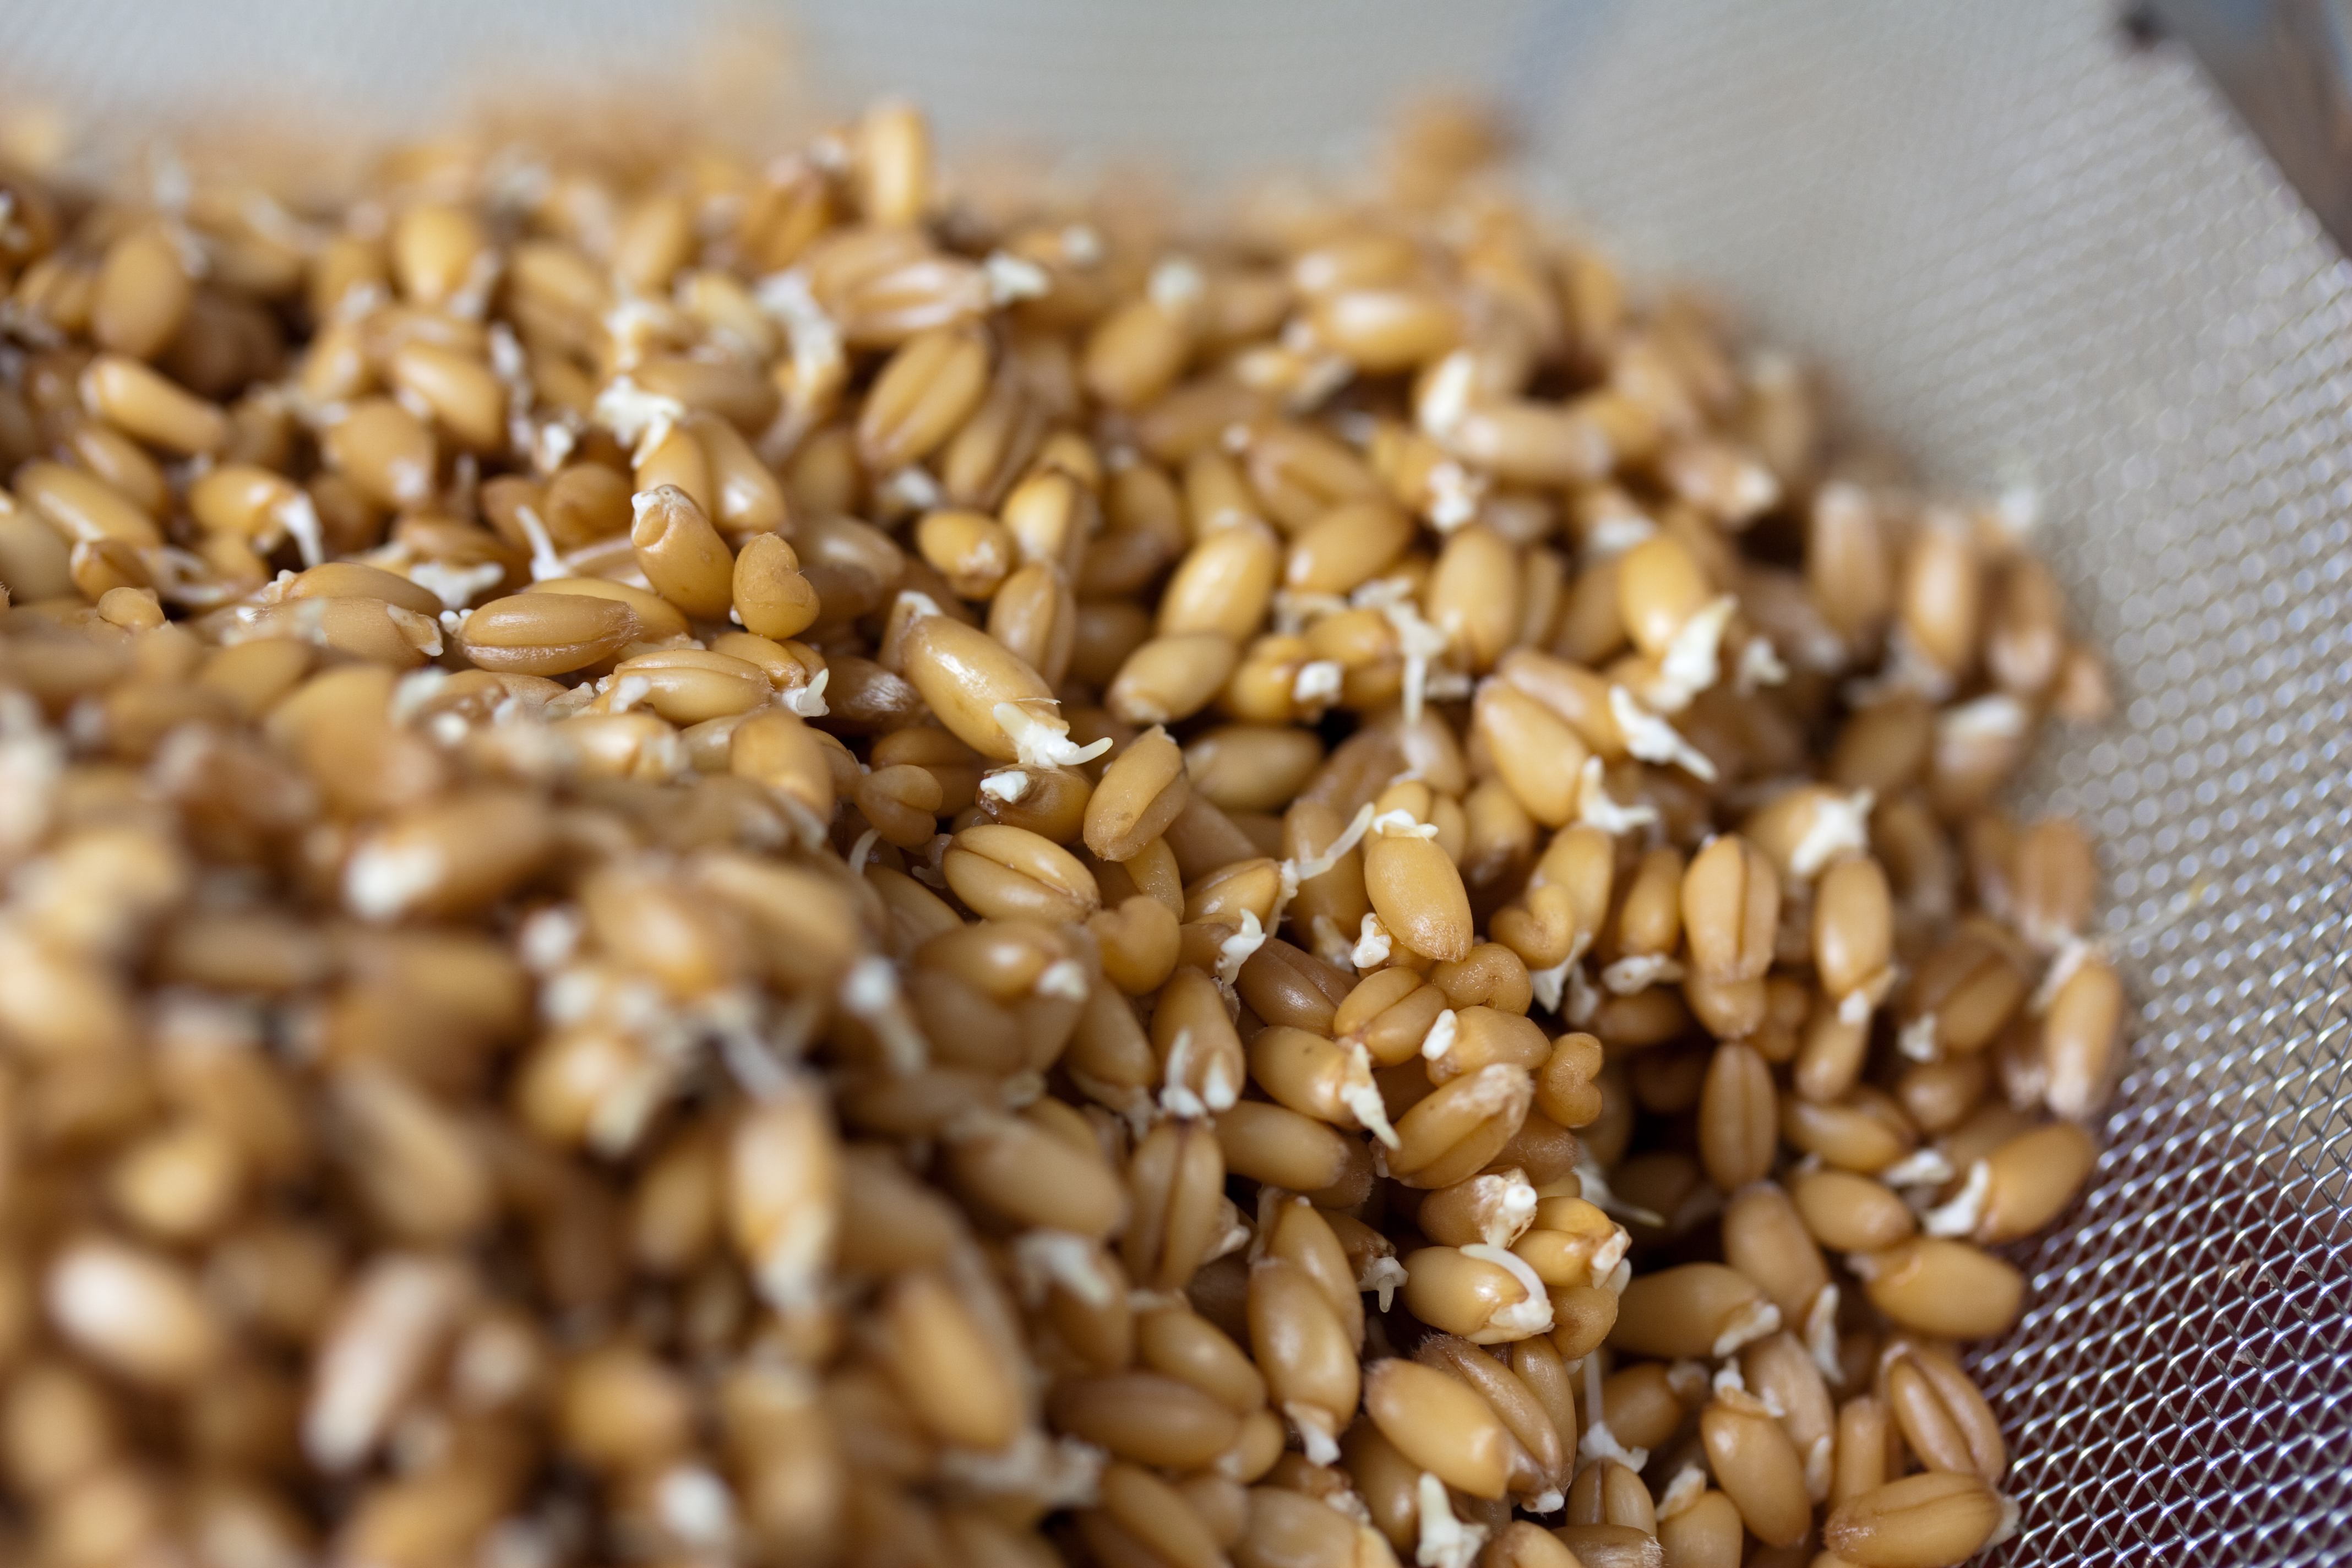 Пророщенная пшеница и ее польза и вред для здоровья человека, советы врачей по нормам и использованию зерен